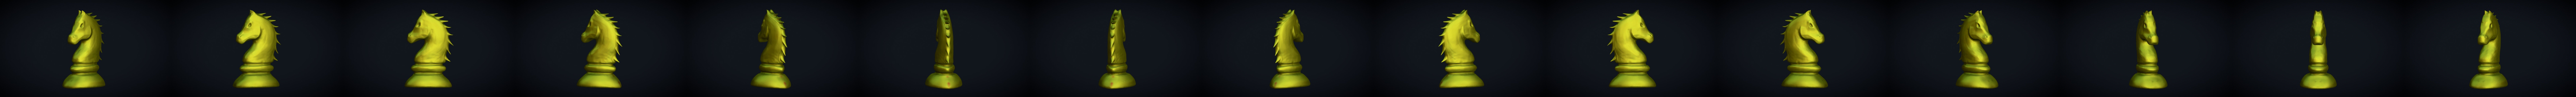 Ilustração de xadrez de cavalo em estilo 3d